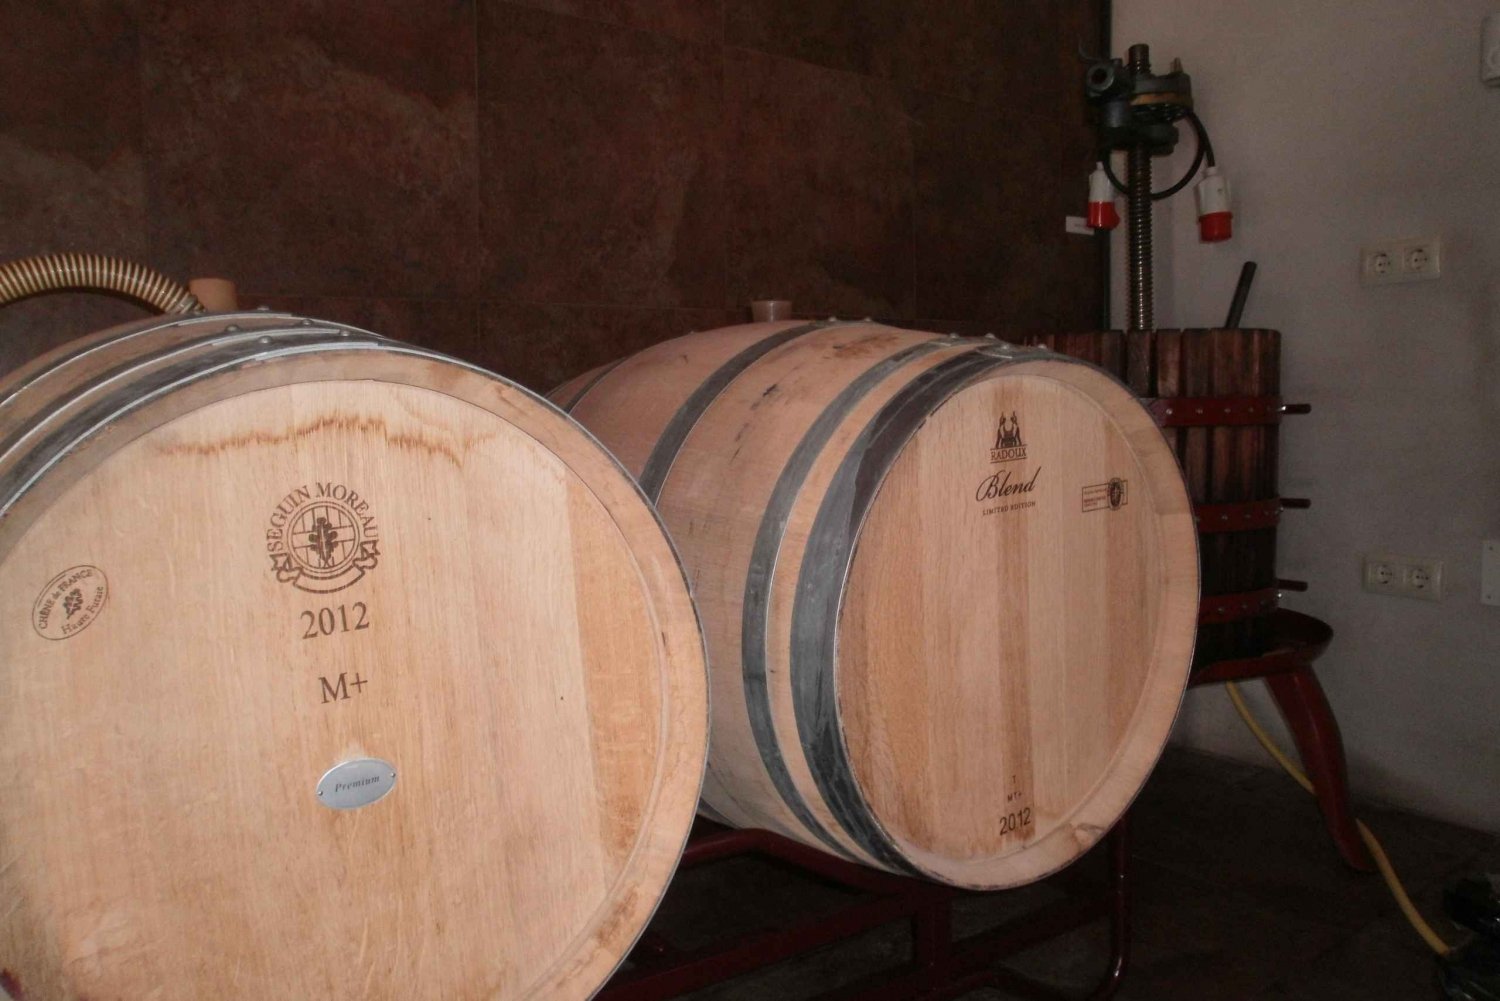 Segovia: Vingårdstur med vinprovning